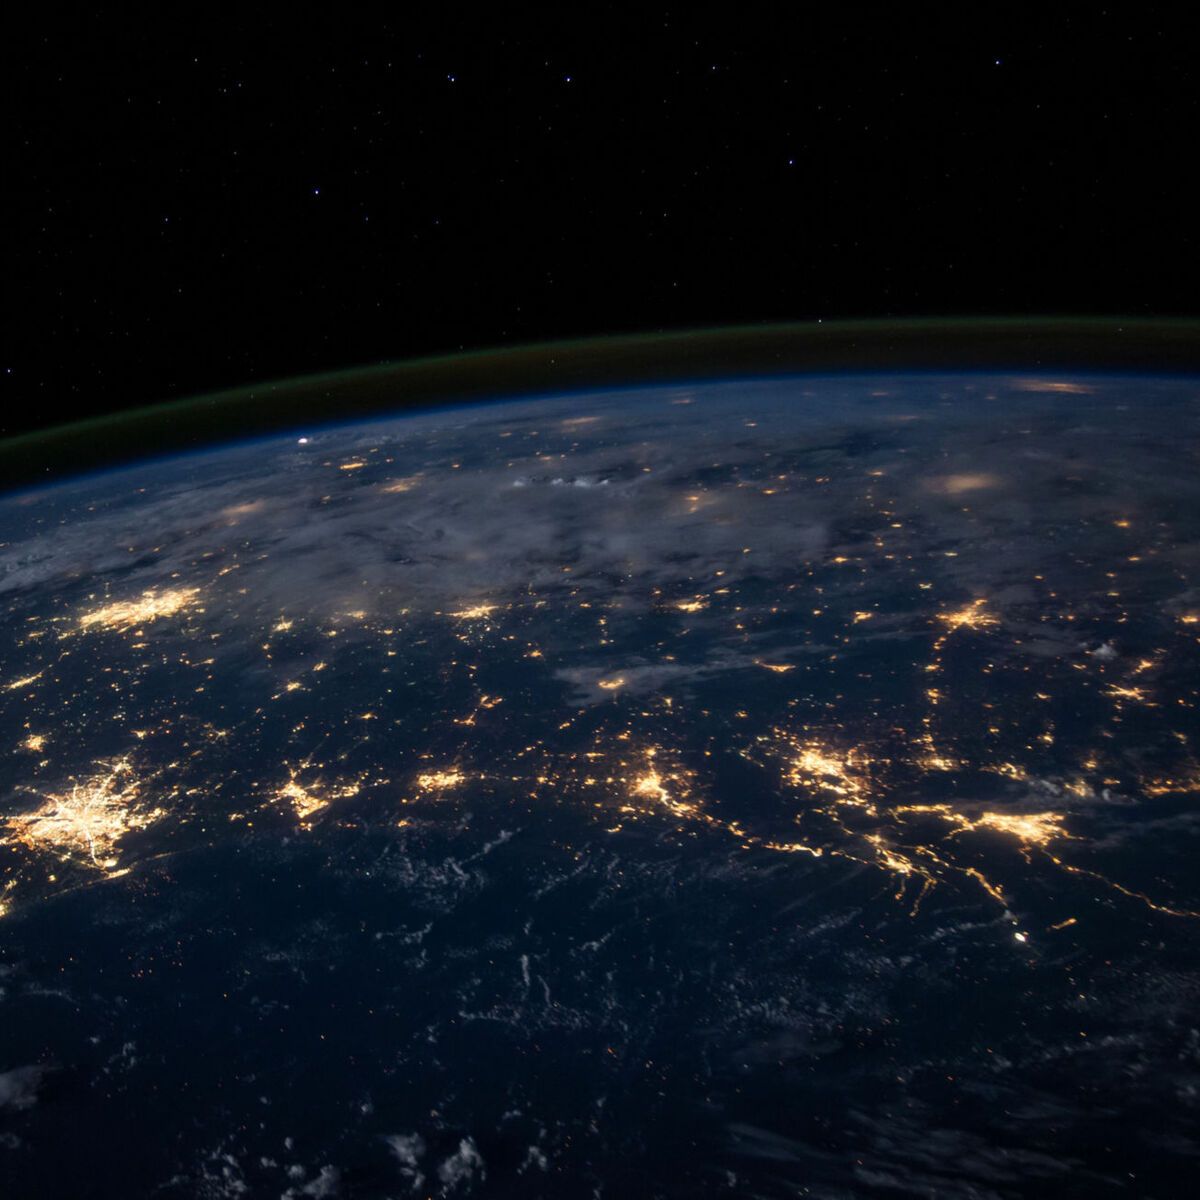  Erde Hintergrundbild 1200x1200. Earth Hour Stunde Licht aus für die Umwelt